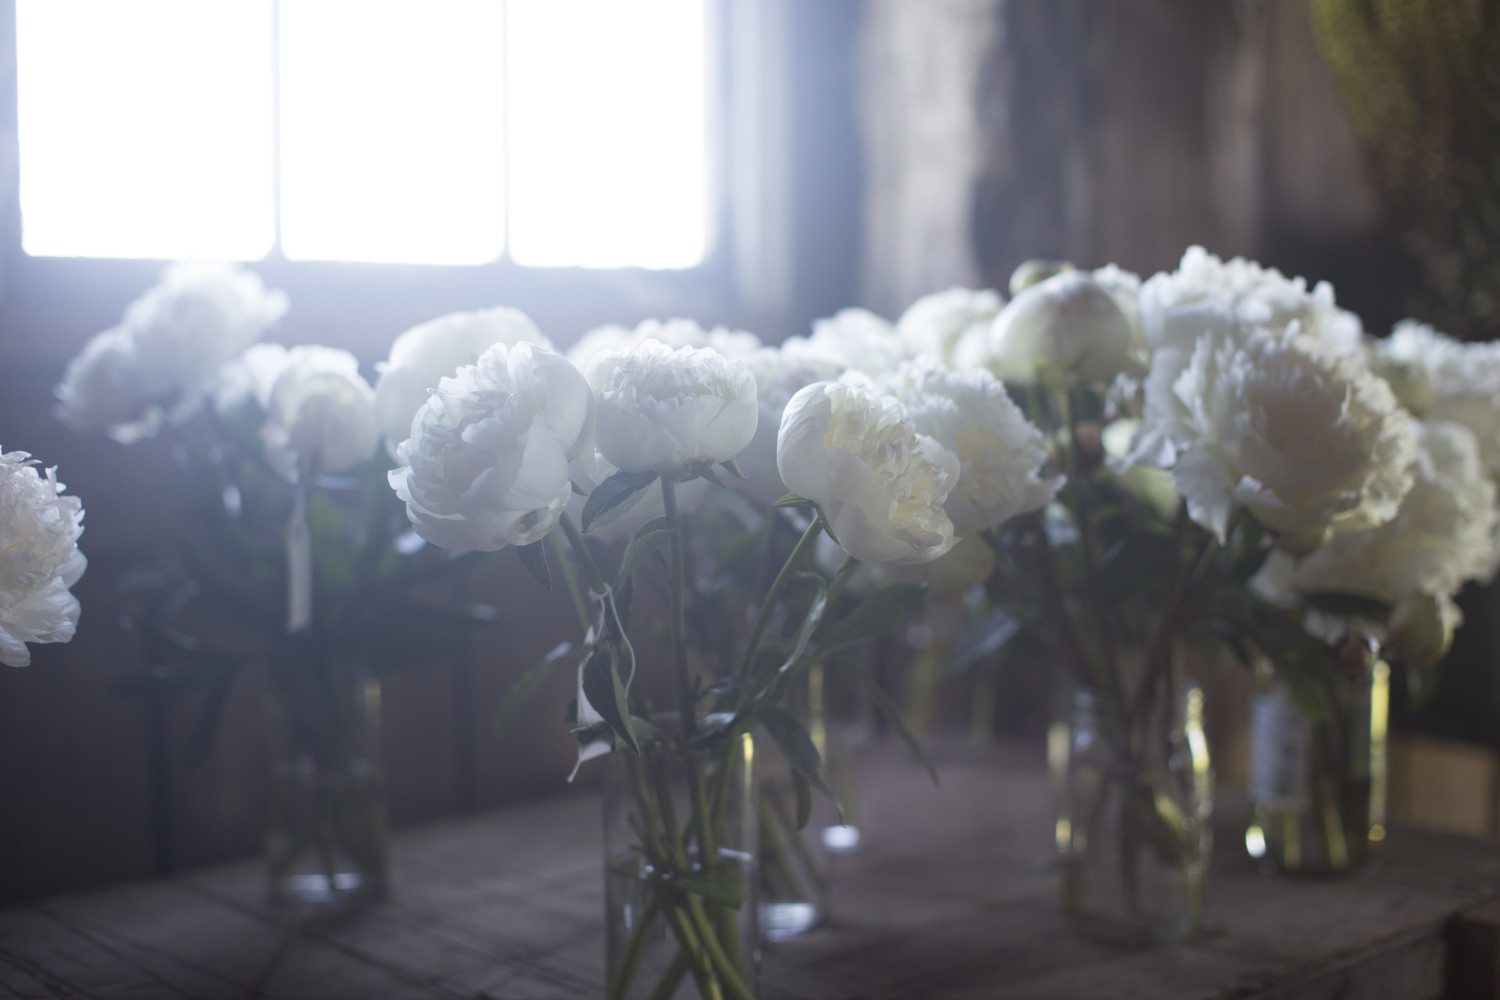 Vases of white peonies